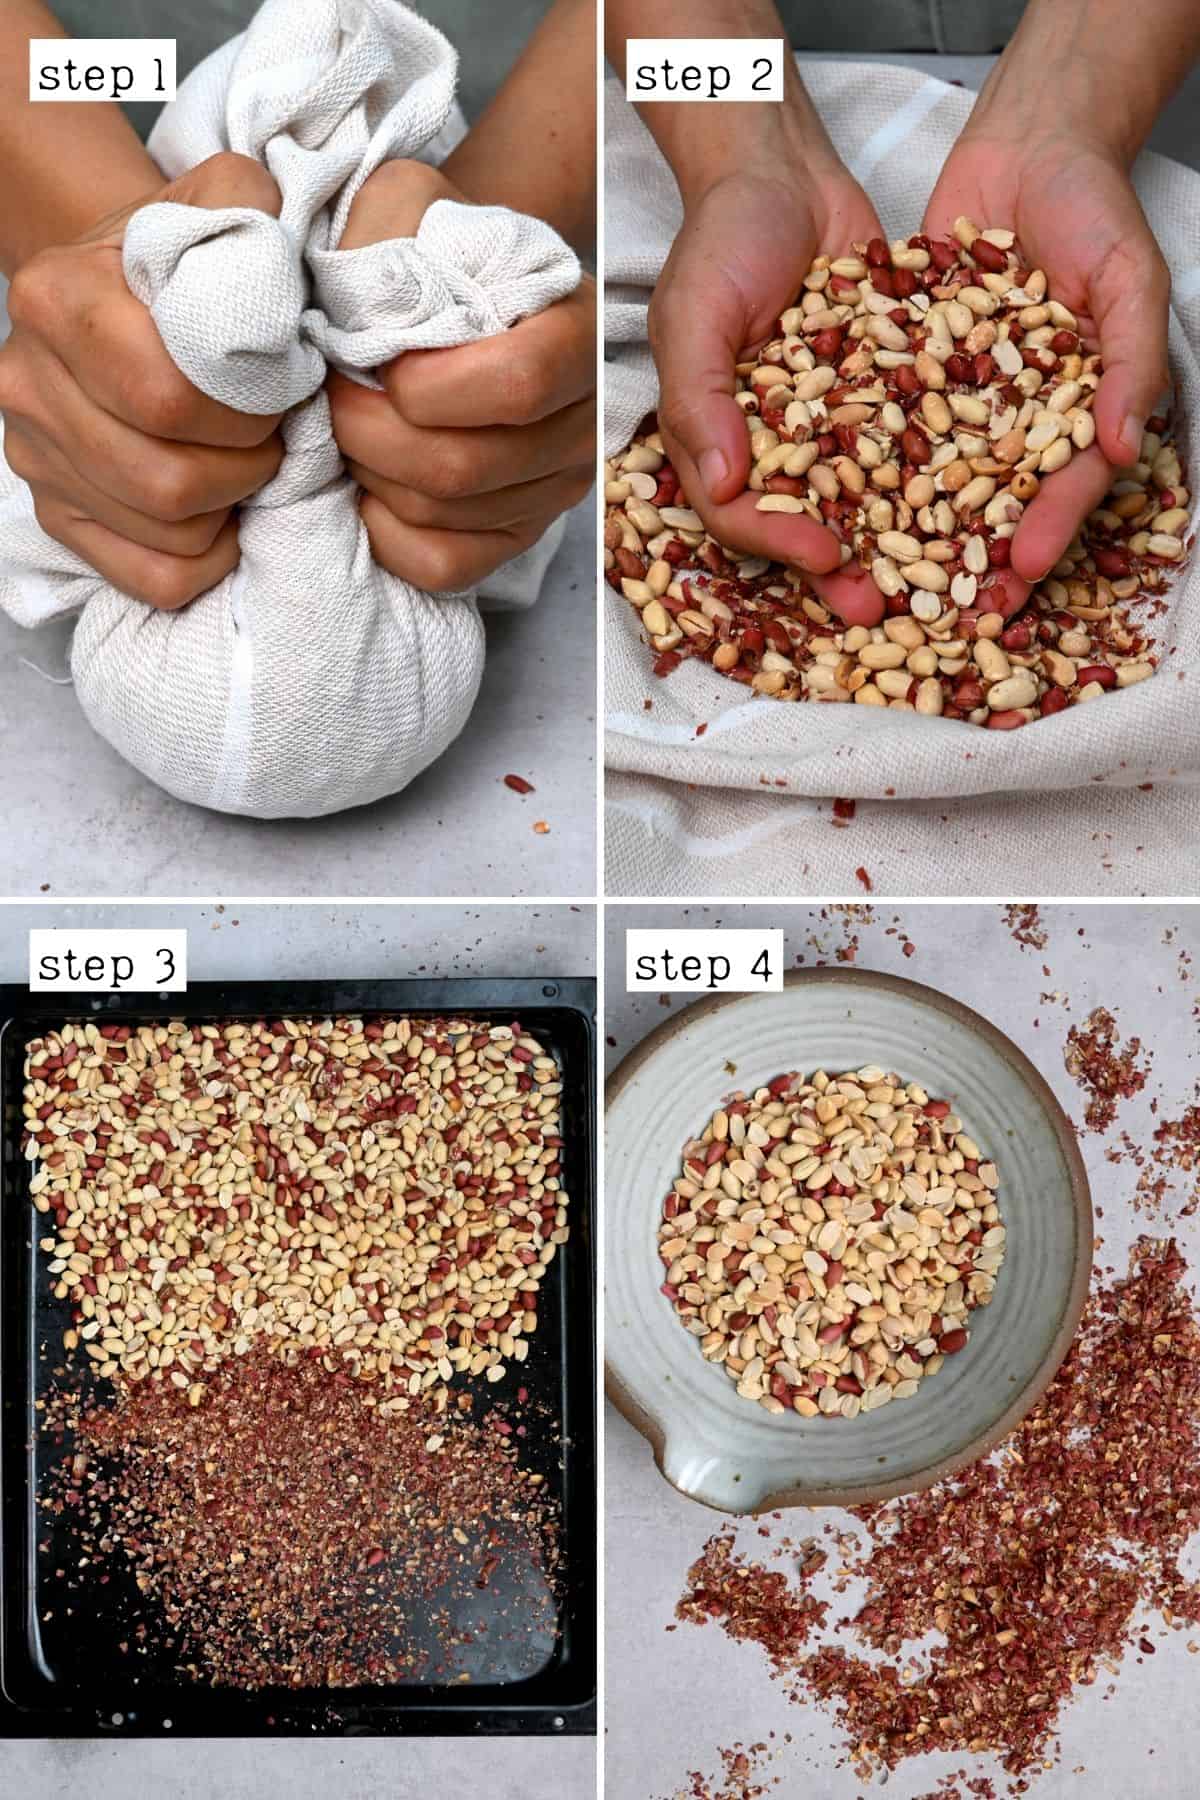 Steps for peeling roasted peanuts